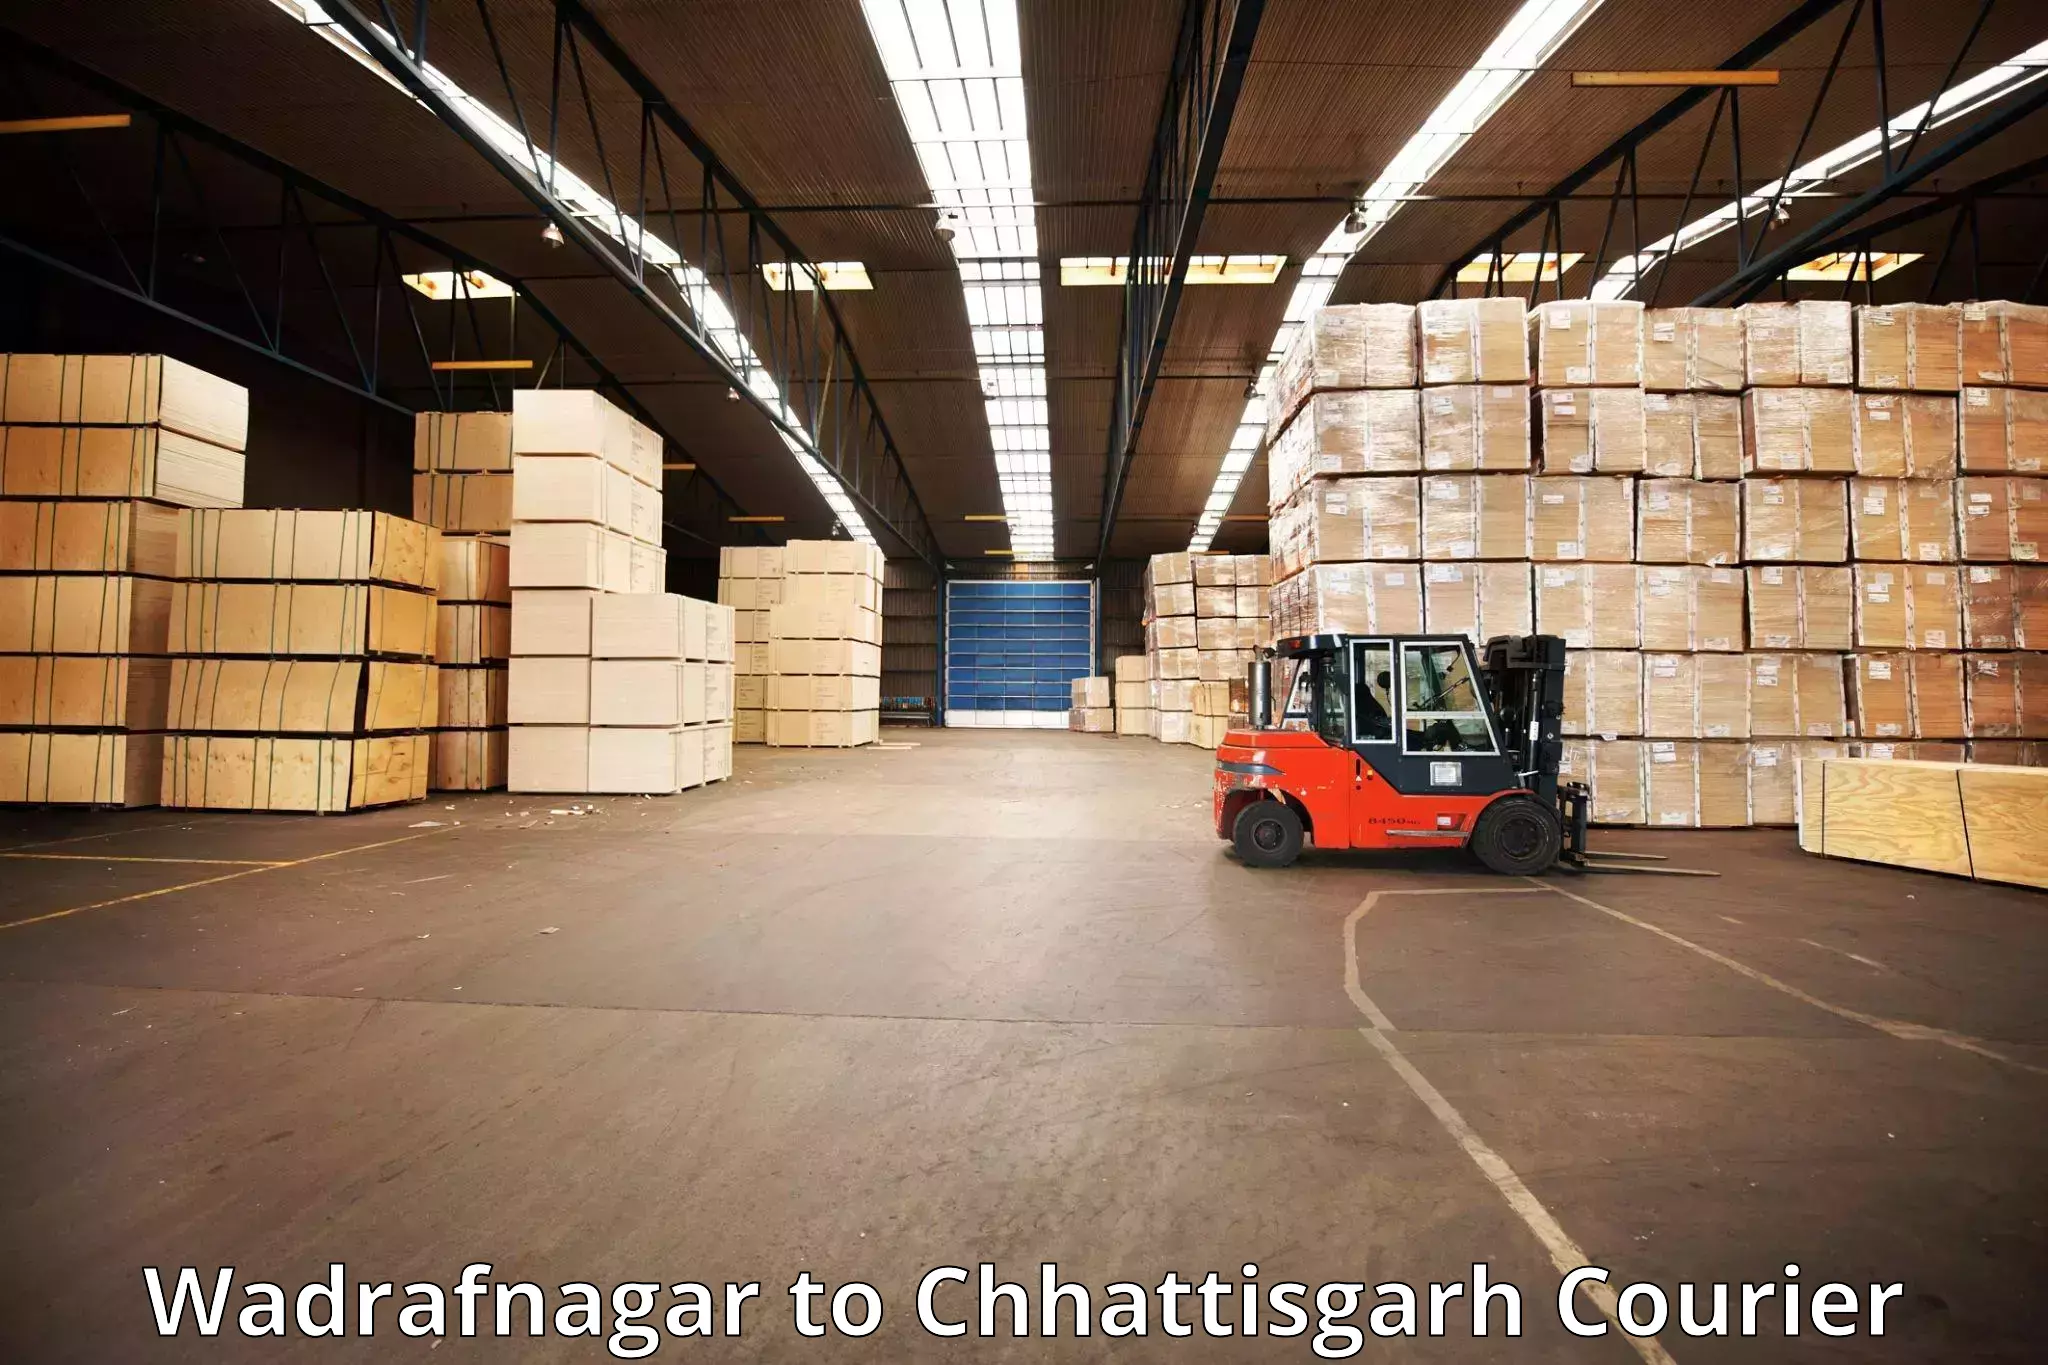 Baggage courier operations Wadrafnagar to Bijapur Chhattisgarh